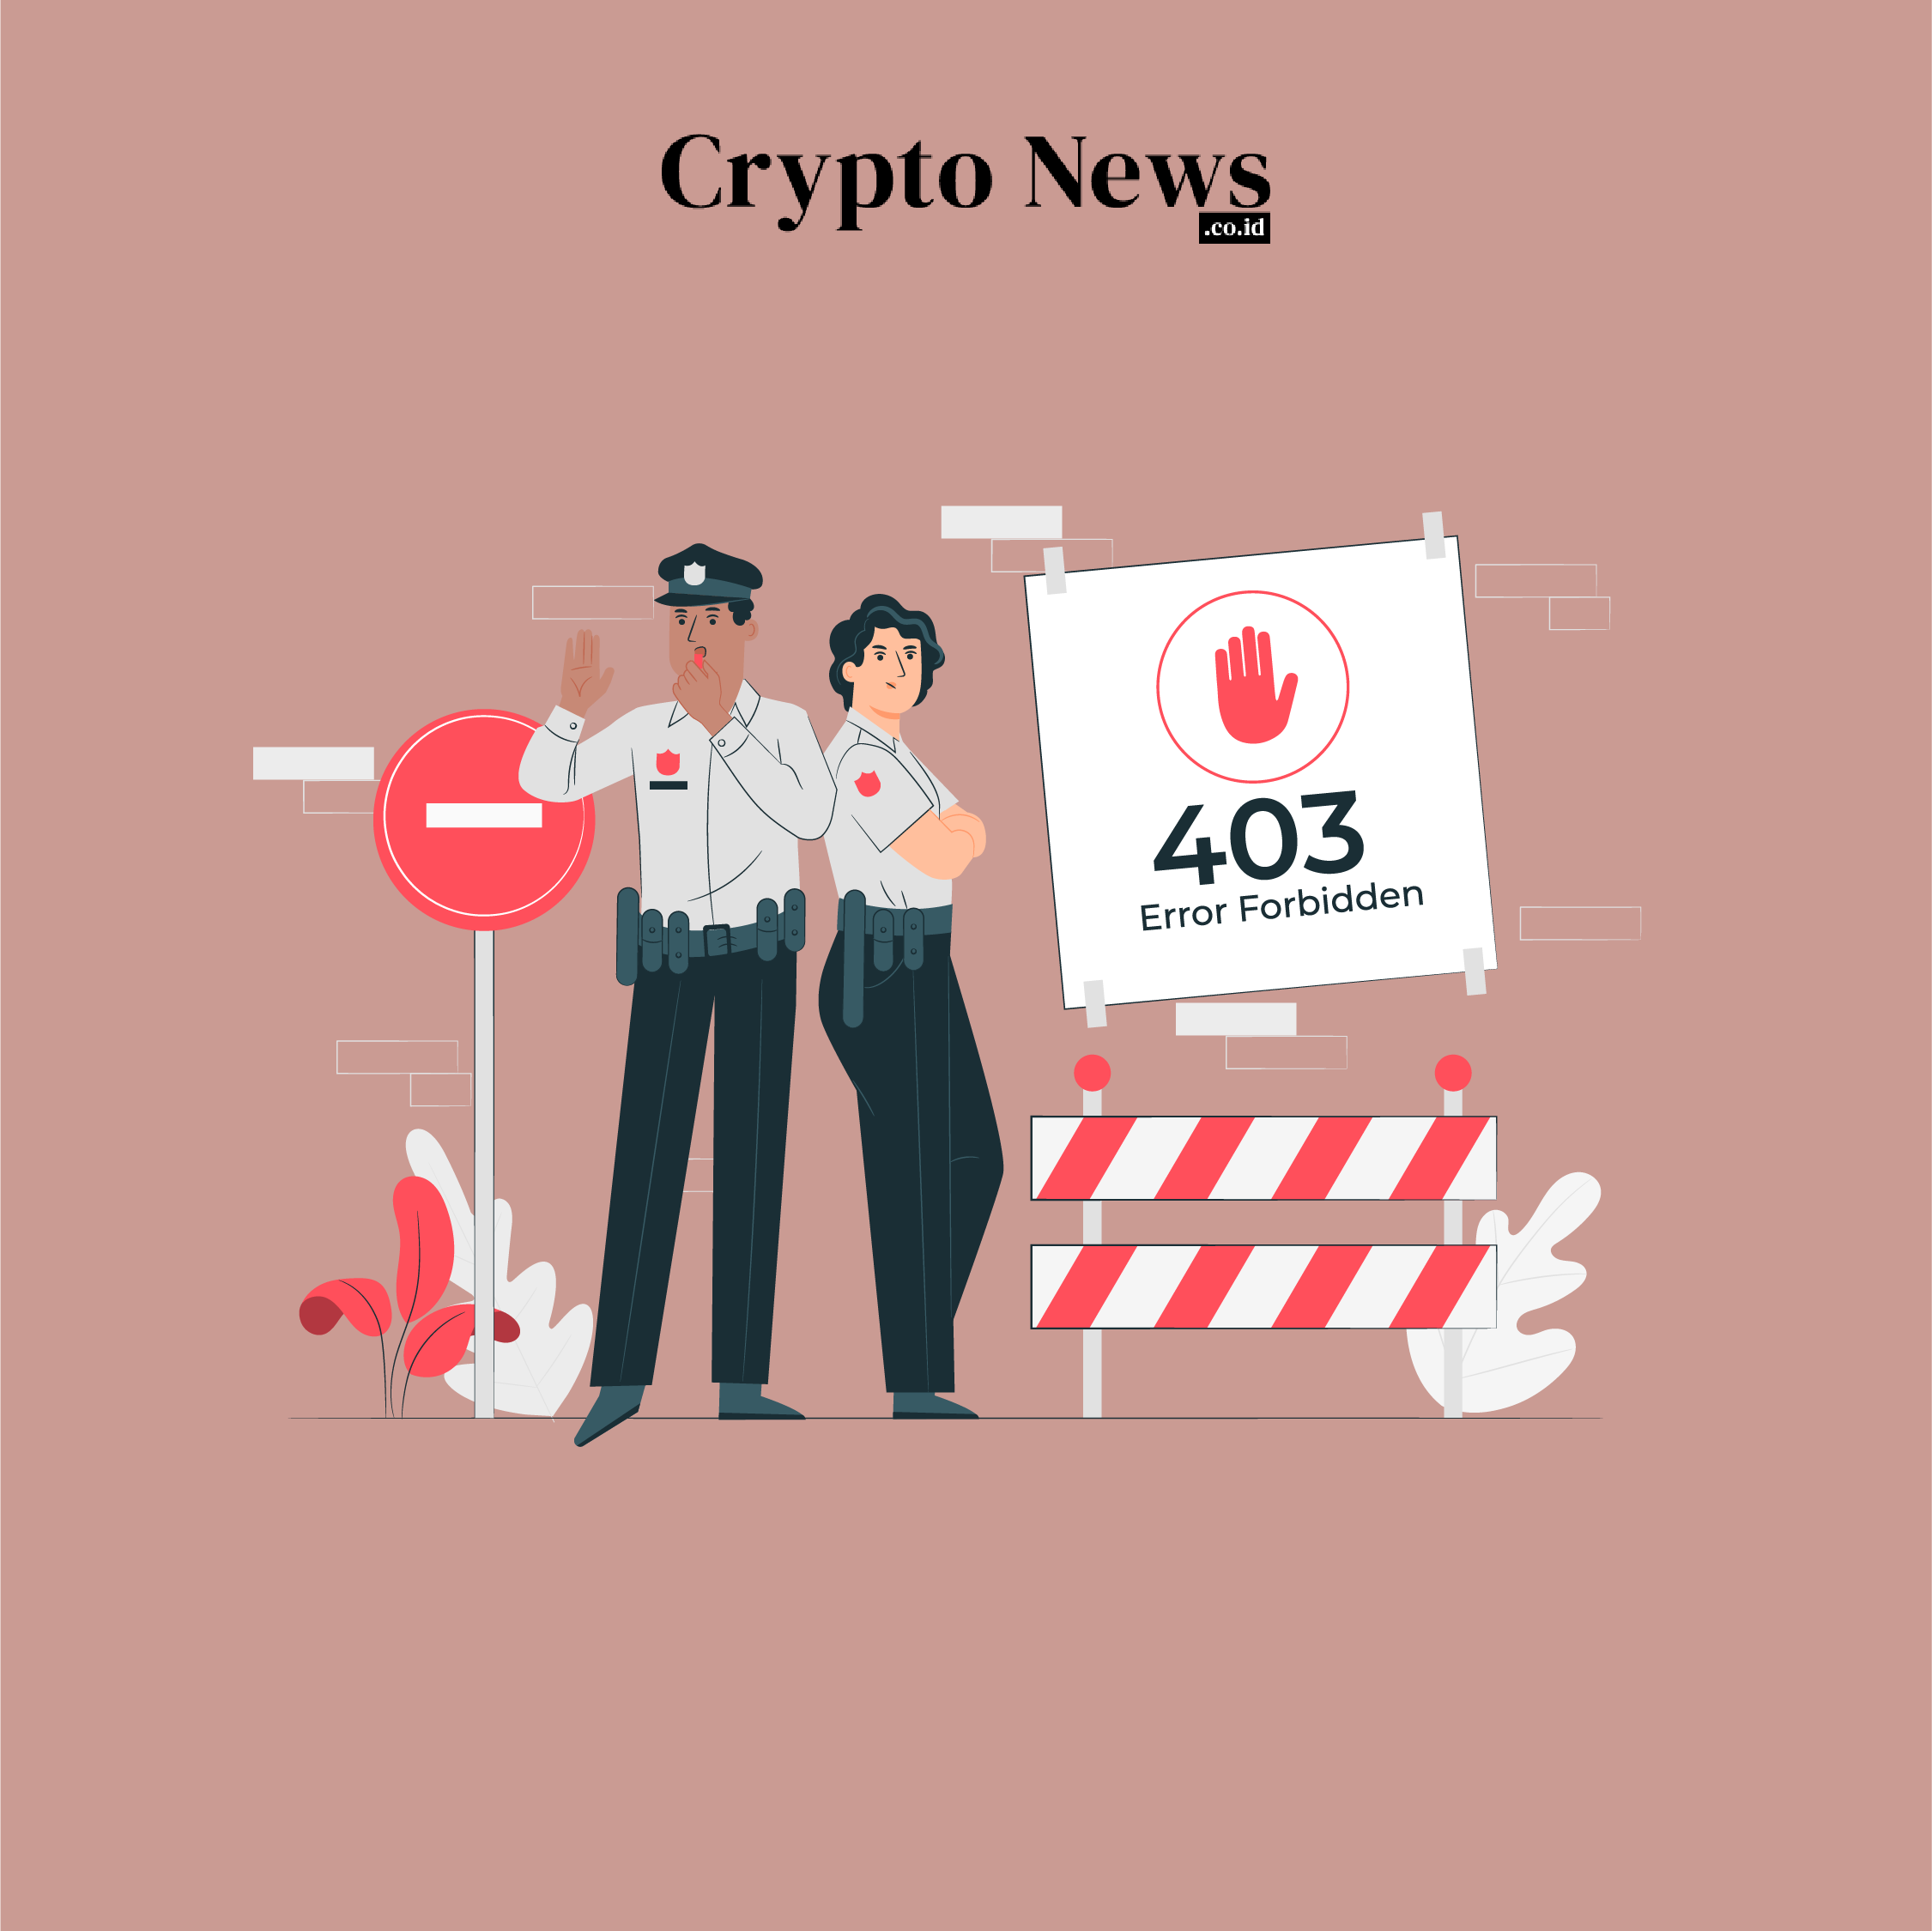 Crypto news indonesia, situs berita cryptocurrency & blockchain - illust - blockchain. Com melarang pengguna rusia mengakses akun mereka